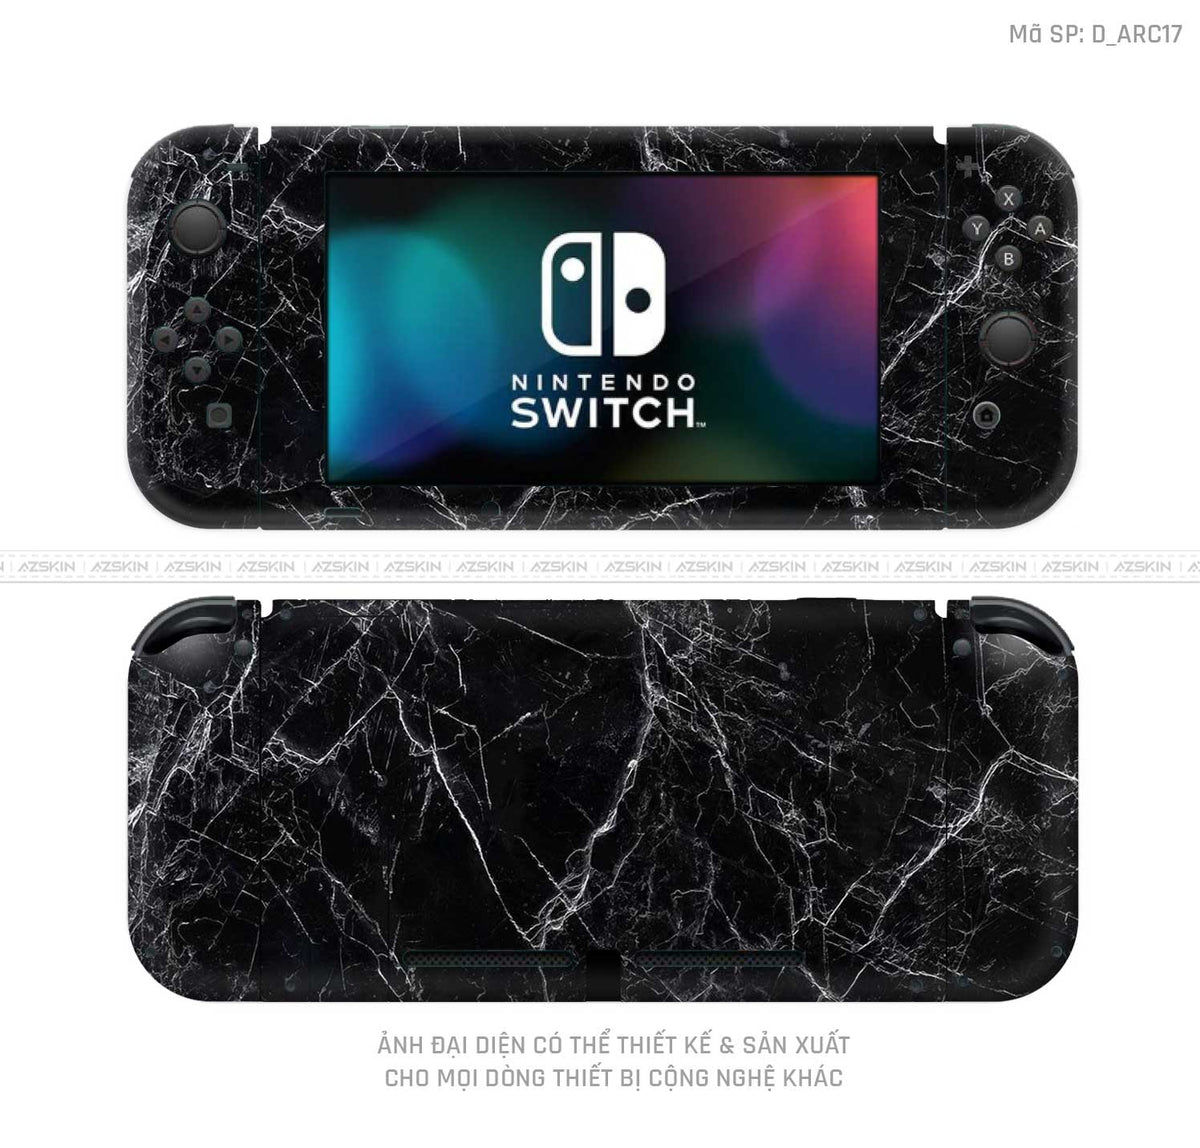 Dán Skin Máy Chơi Game Nintendo Switch Hình Nghệ Thuật Arcrylic | D_ARC17